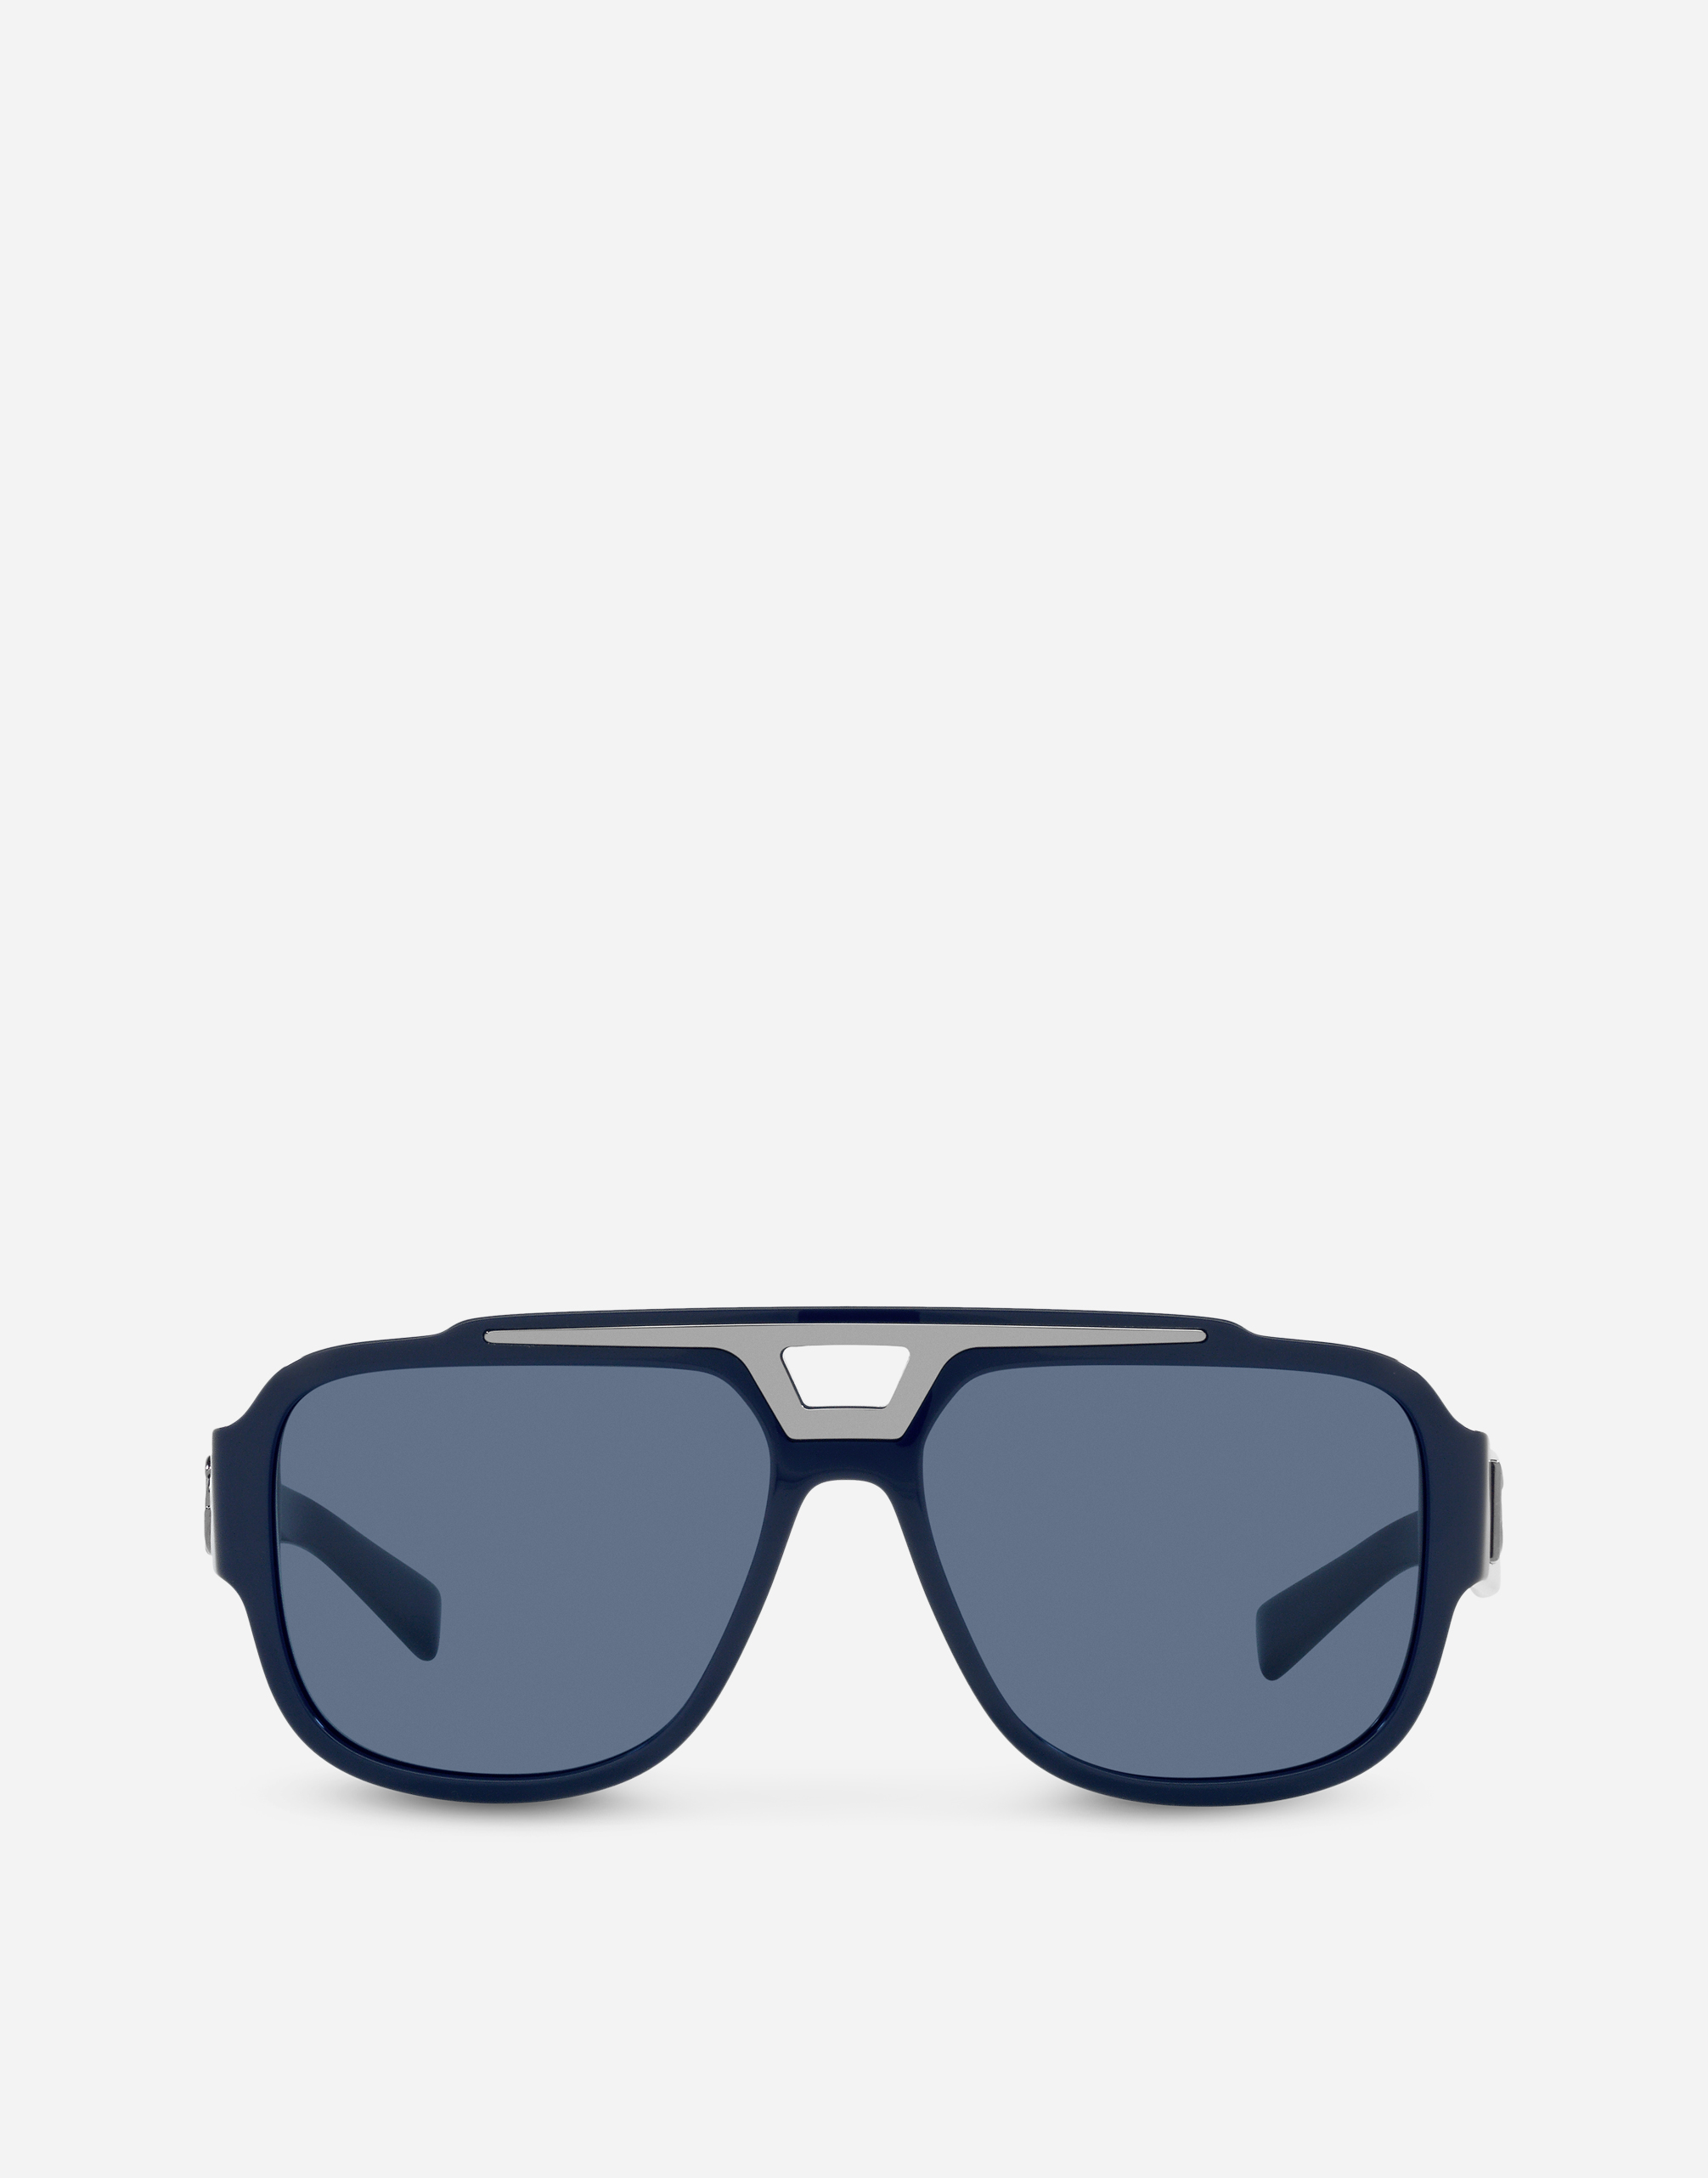 DG crossed sunglasses  in Blue